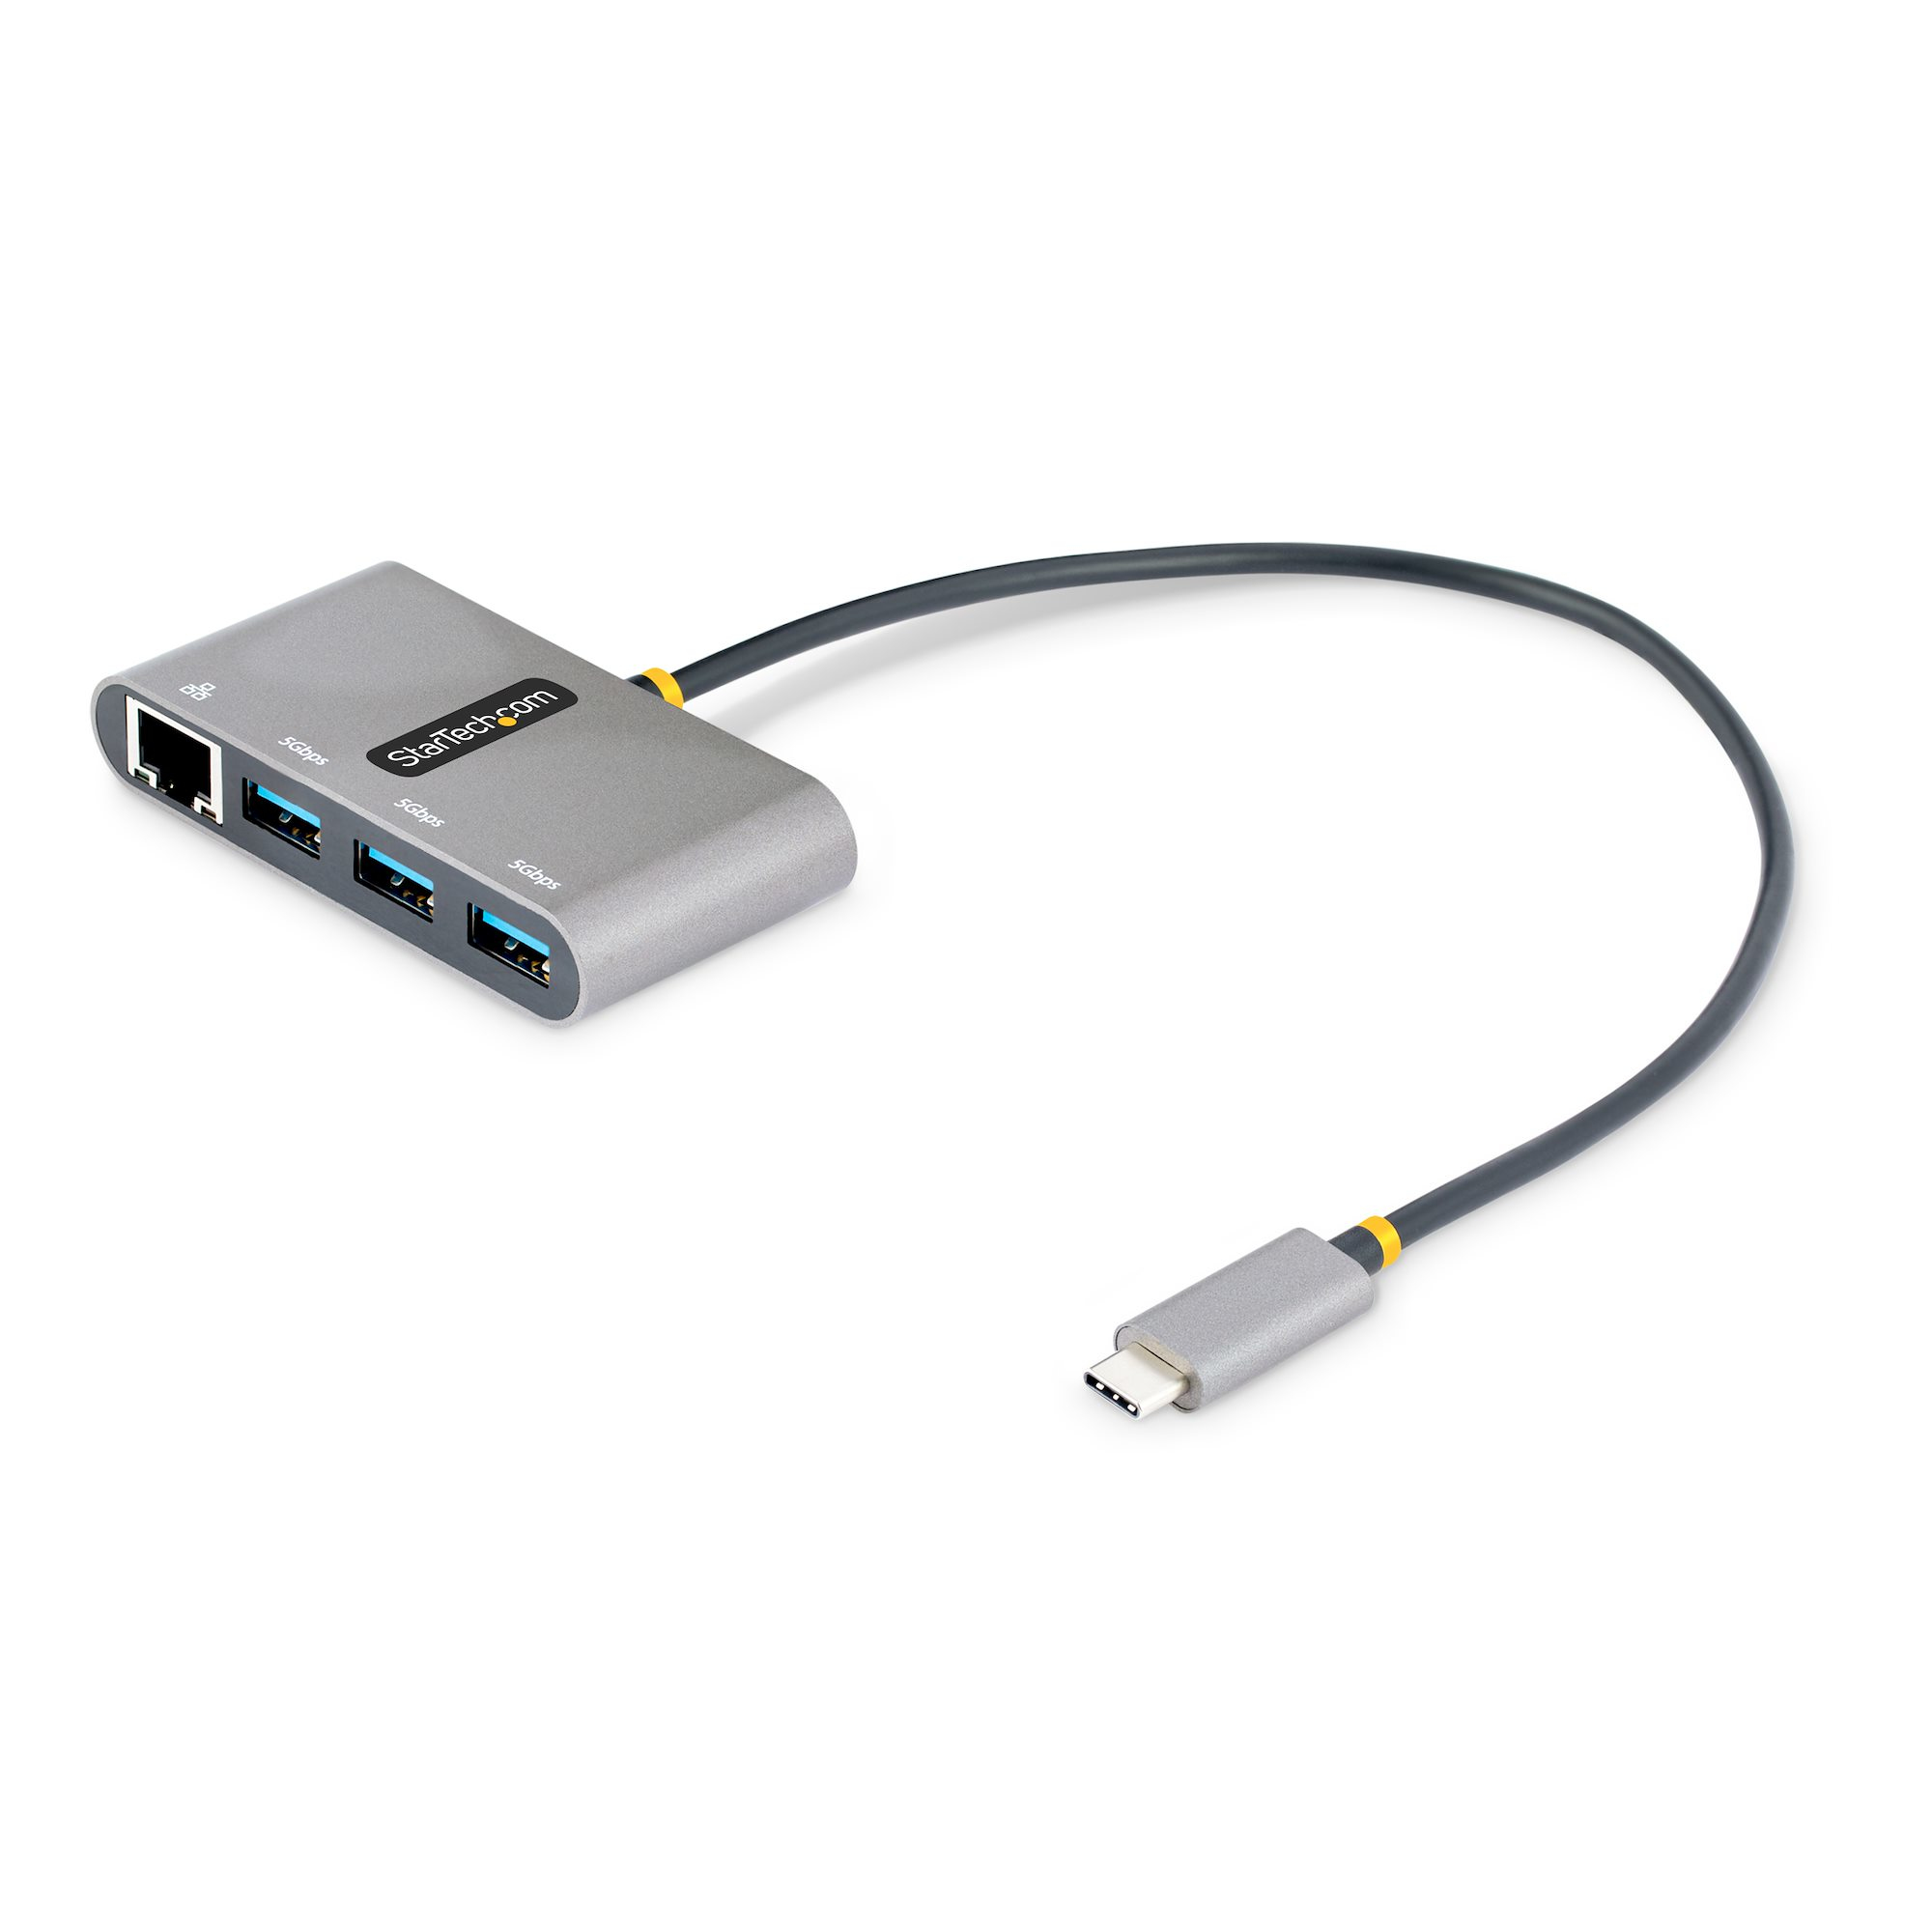 StarTech.com USB-C-hubb med 3 portar och Ethernet - 3x USB-A - Gigabit Ethernet - USB 3.0 5Gbps - bussdriven - 30 cm lång USB Type-C-värdkabel - GbE - Bärbar USB-C- till USB-A-hubb